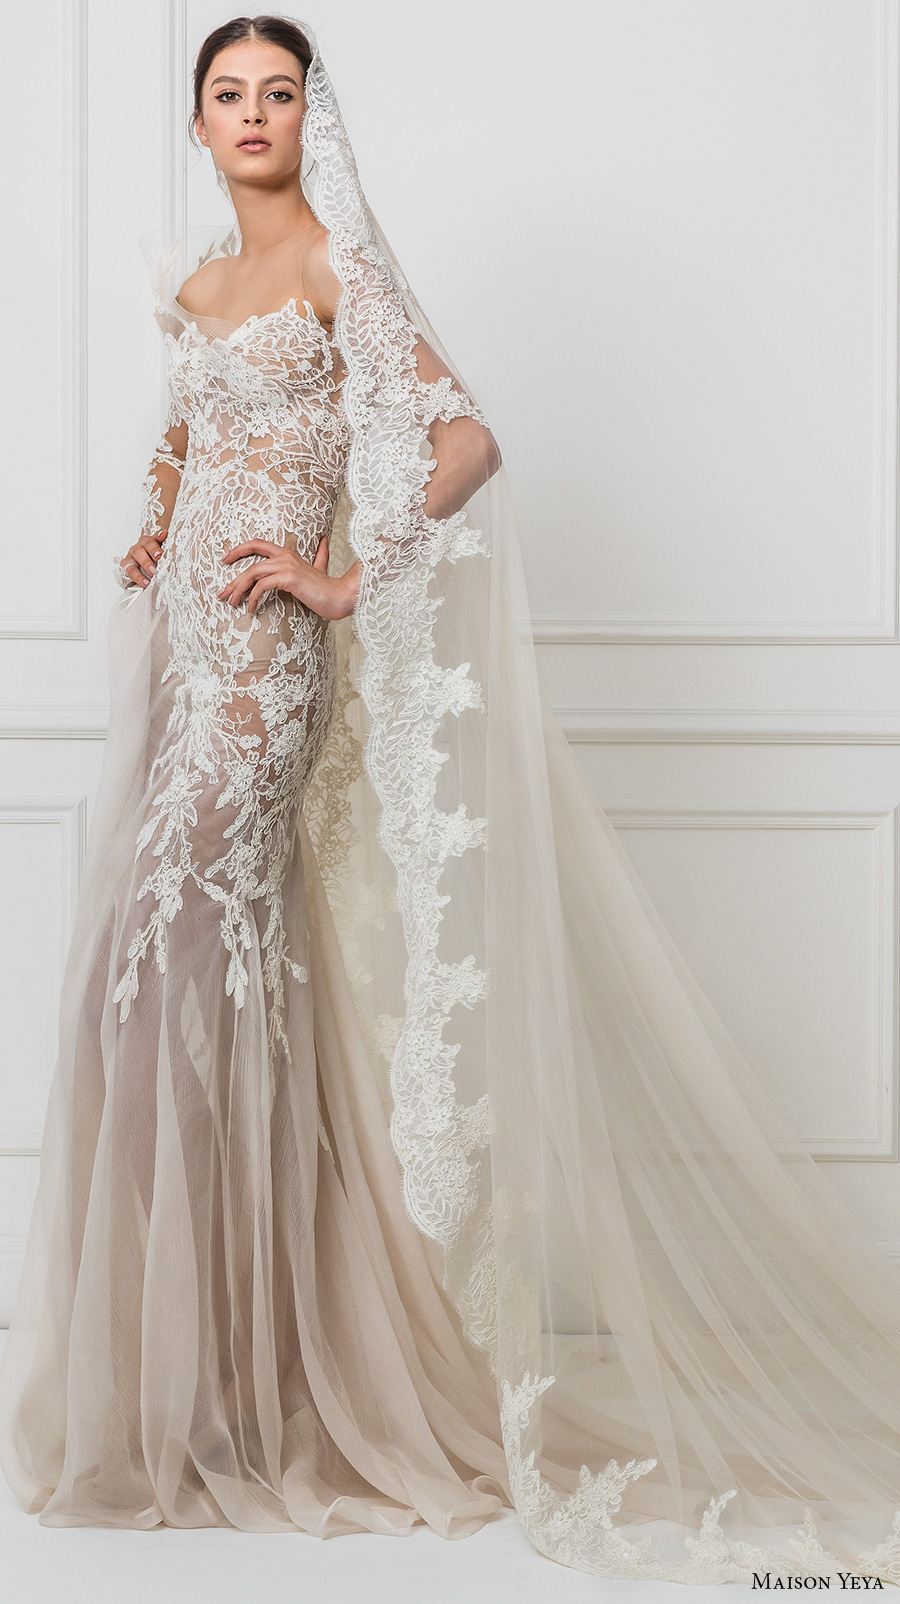 maison yeya 2017 bridal one side long sleeves heavily embroidered bodice elegant glamorous lace sheath wedding dress illusion lace back sweep train (3) mv 